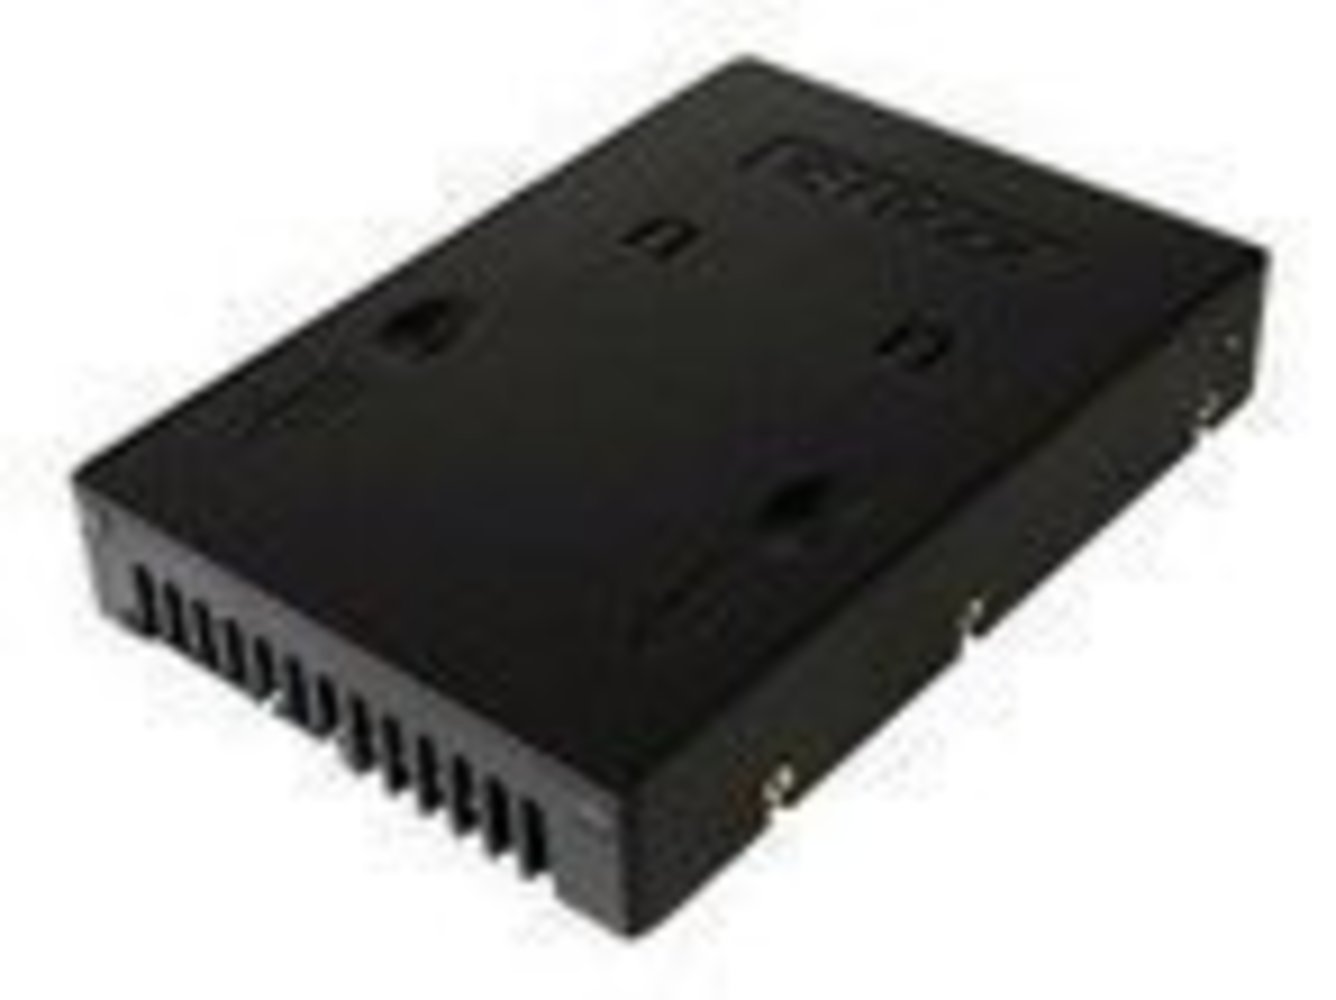  6.35cm 2.5 Zoll HDD-Konverter SATA HDD Konverter macht aus einer 2.5Z 6.35cm eine 3.5Z 8.89cm Festplatte schwarz